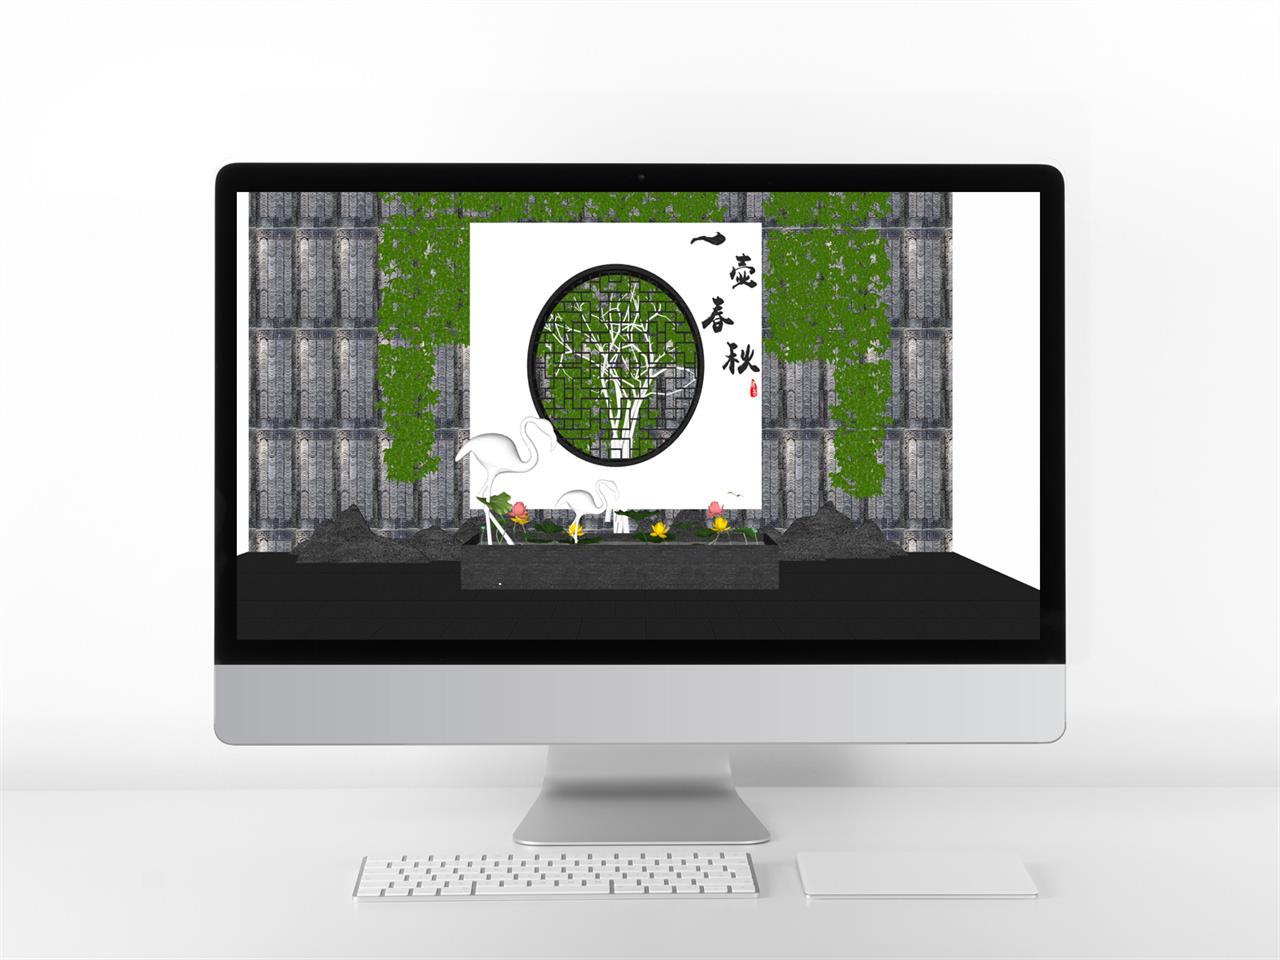 폼나는 정원조경 환경 웹툰배경 템플릿 사이트 미리보기